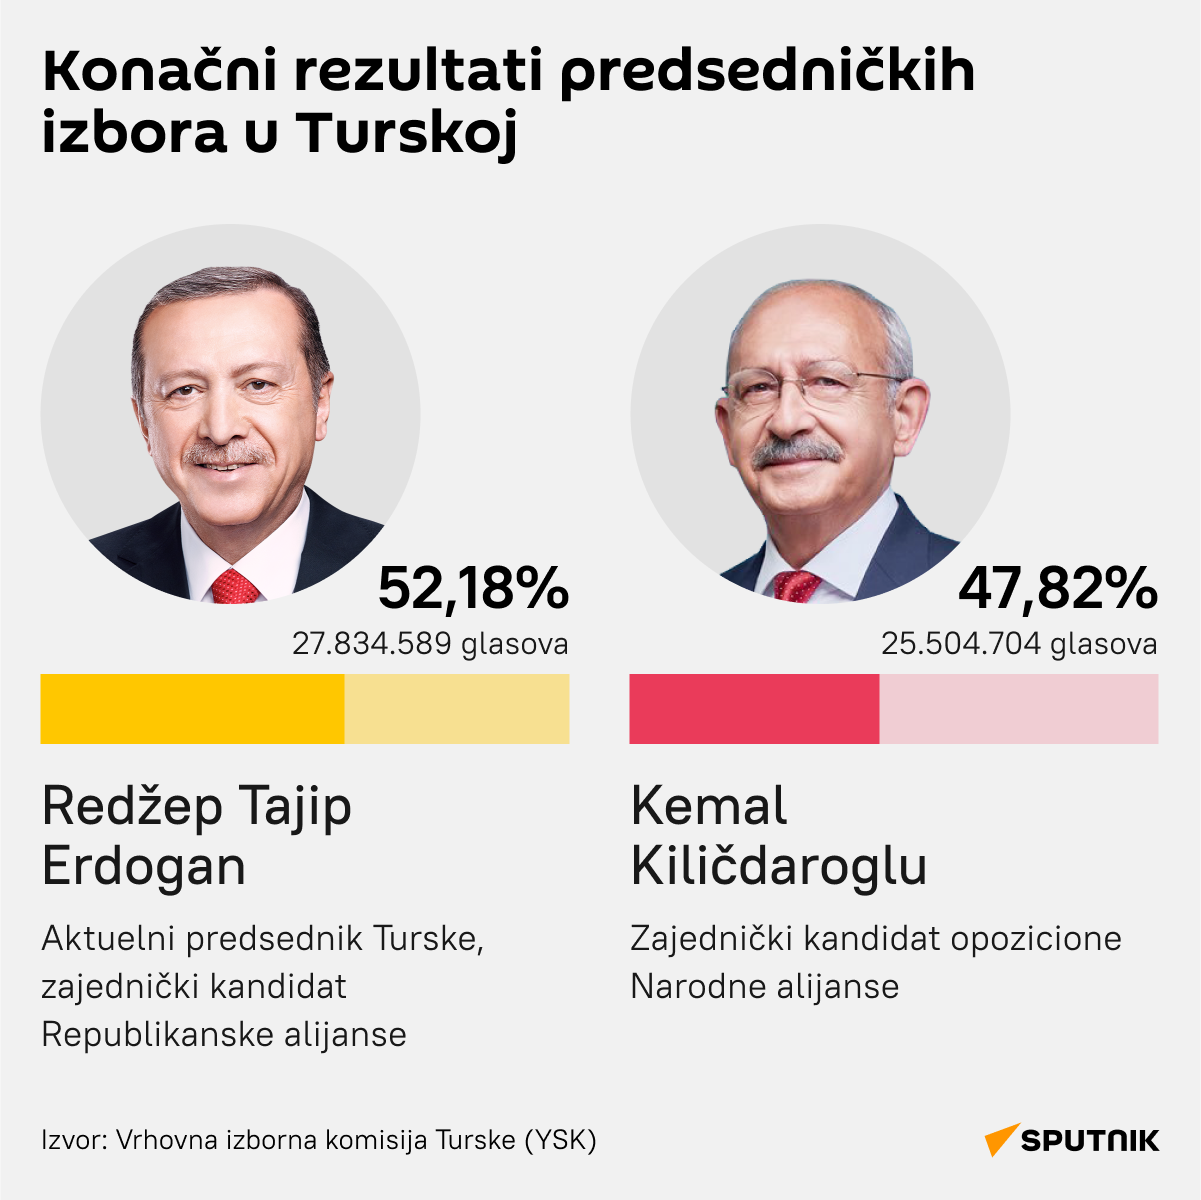 Infografika Konačni rezultati predsedničkih izbora u Turskoj   LATINICA desk - Sputnik Srbija